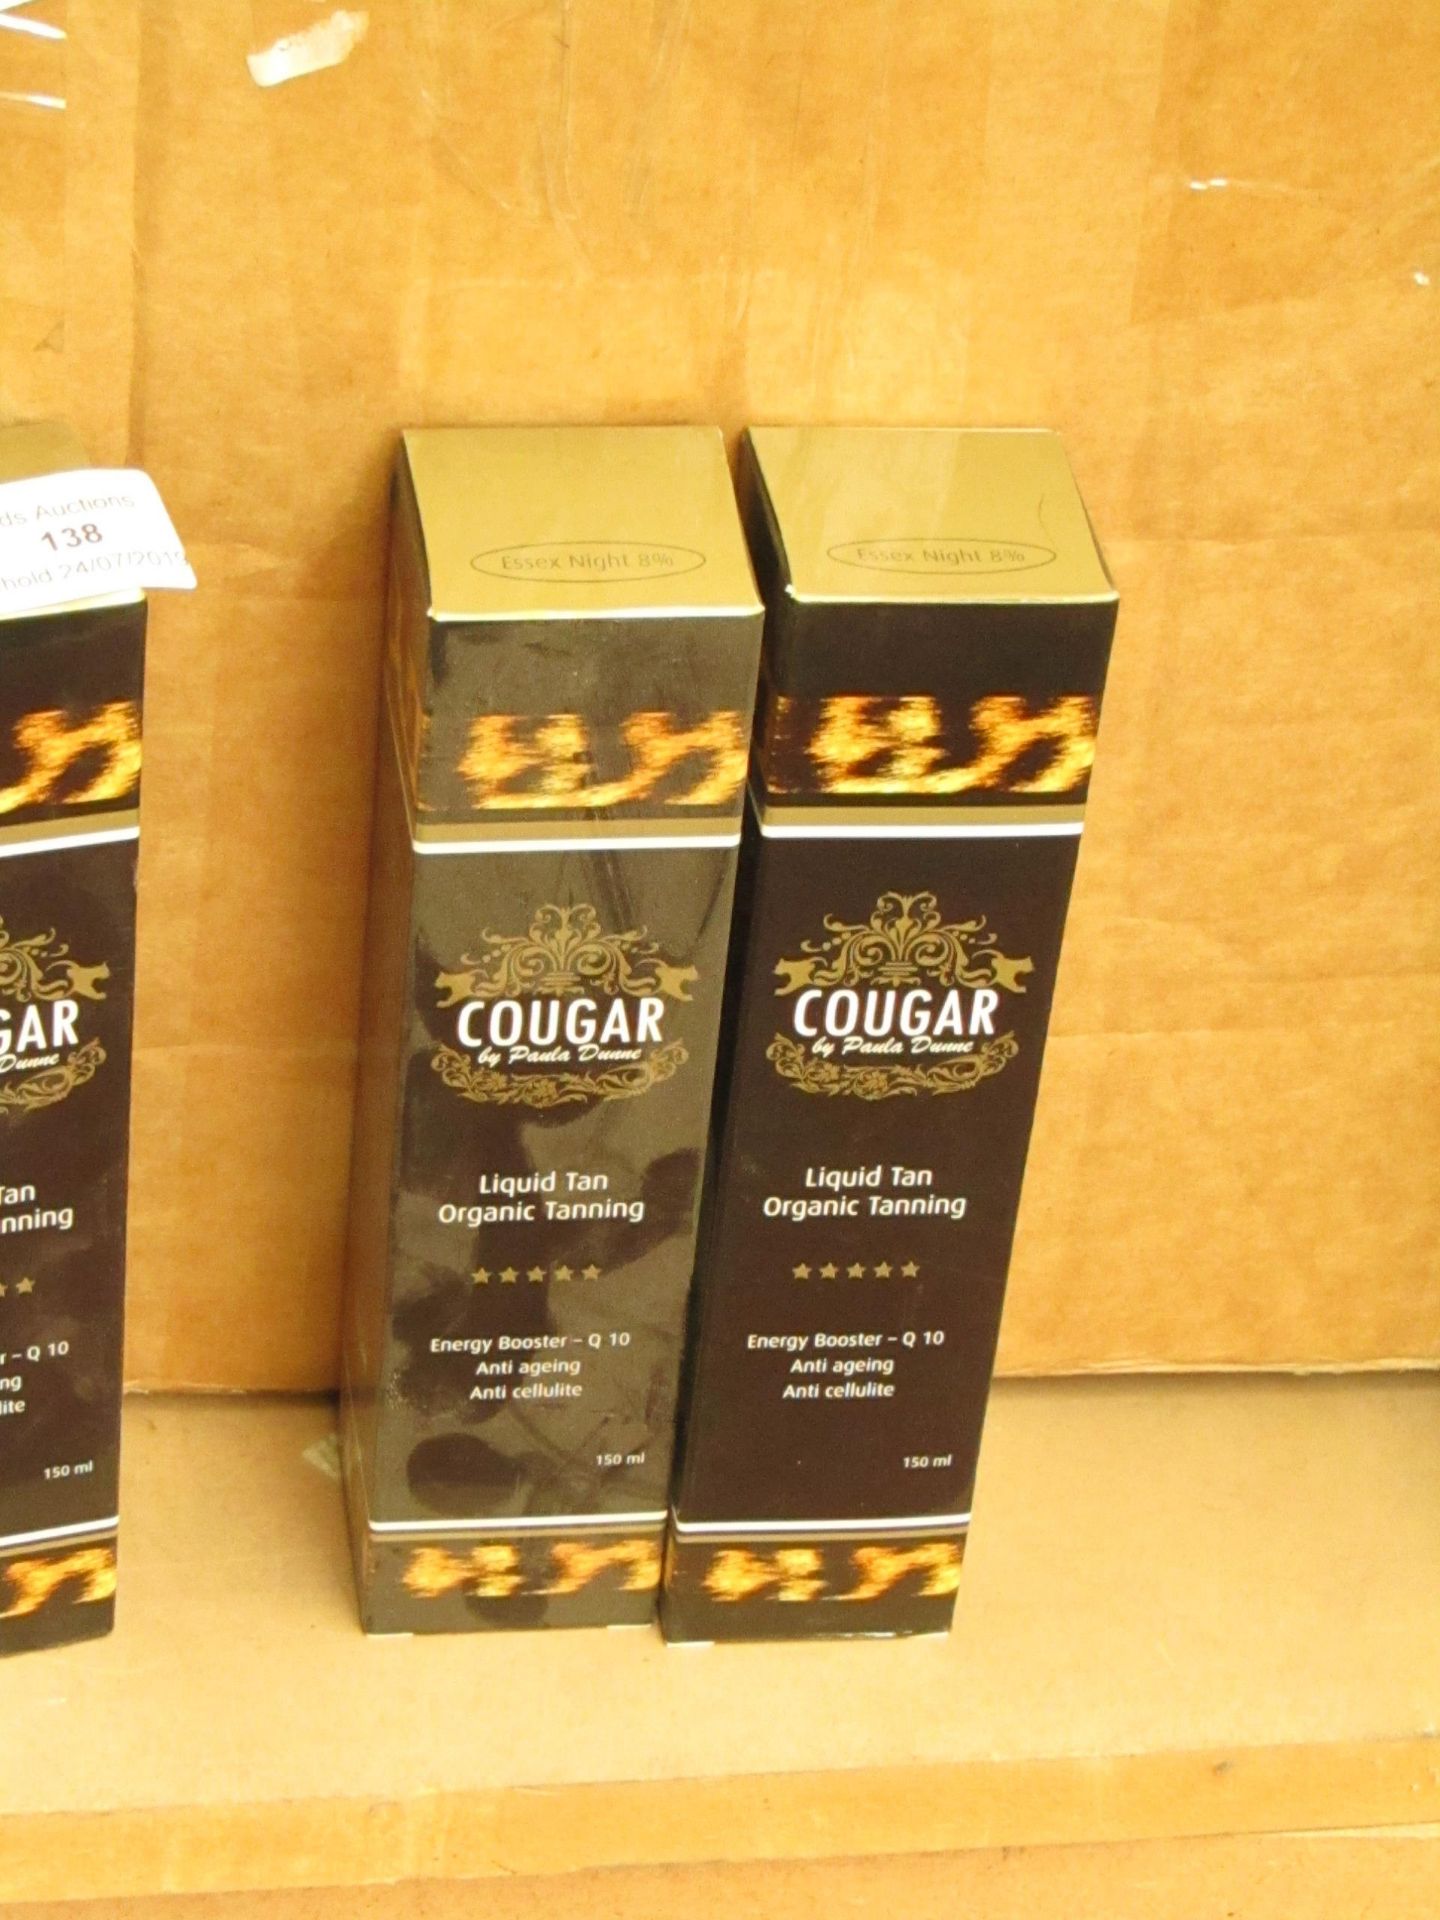 20 x Cougar organic tan,150ml each,new in box